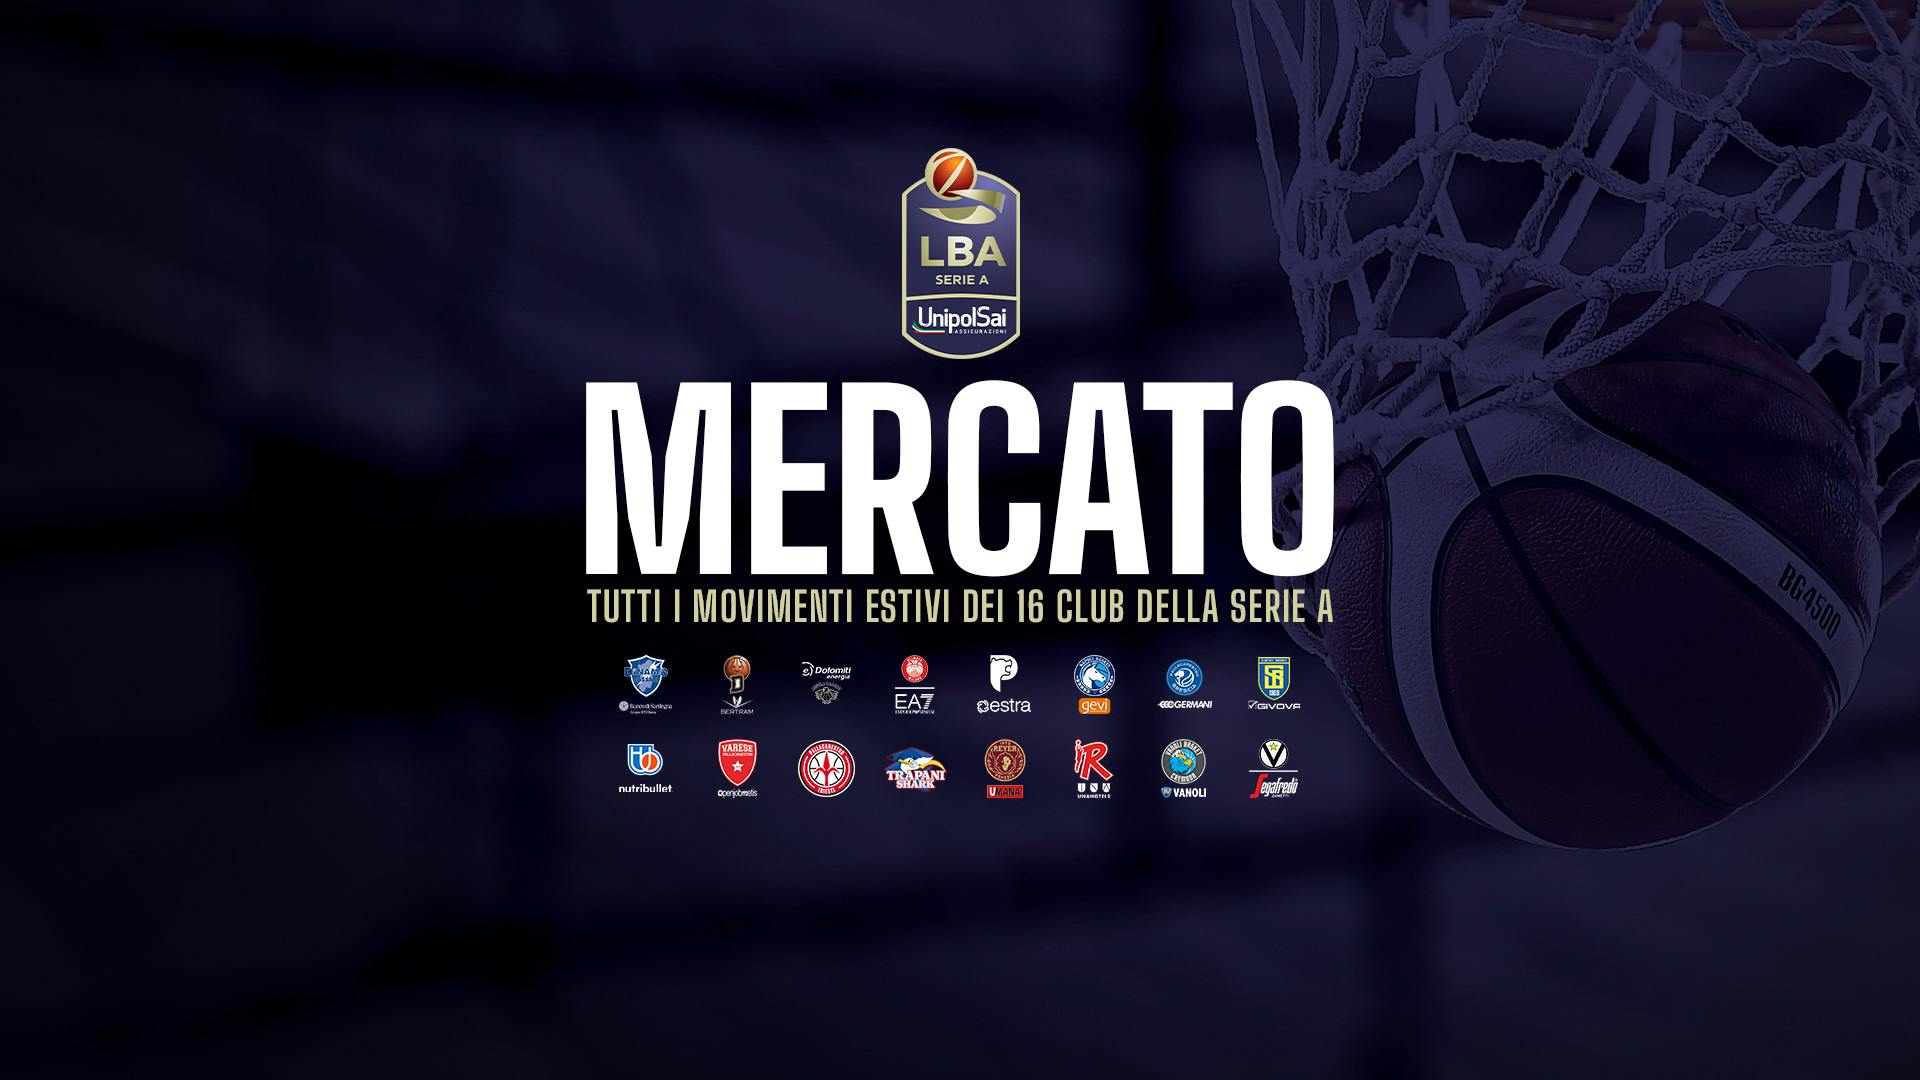 LBA Mercato, tutti i movimenti ufficiali delle 16 squadre della Serie A UnipolSai